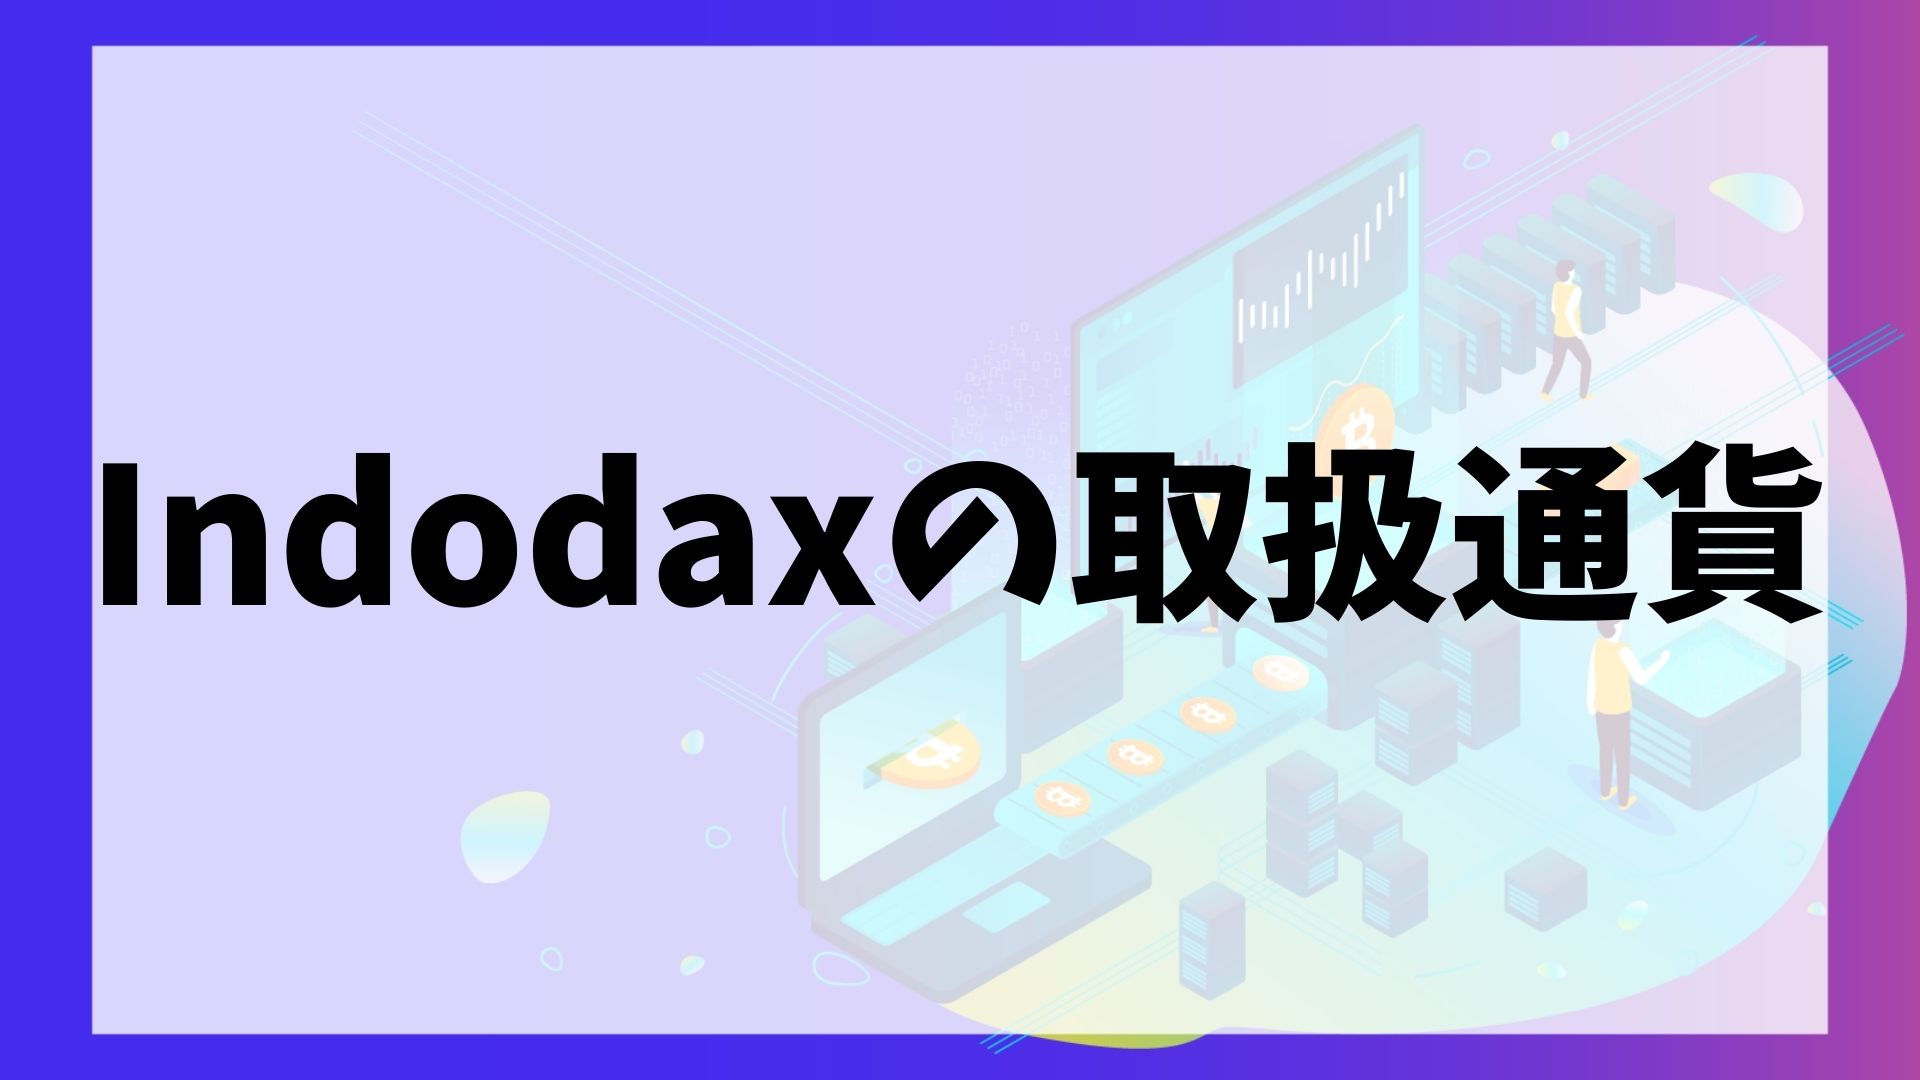 Indodax(インドダックス)の取扱通貨